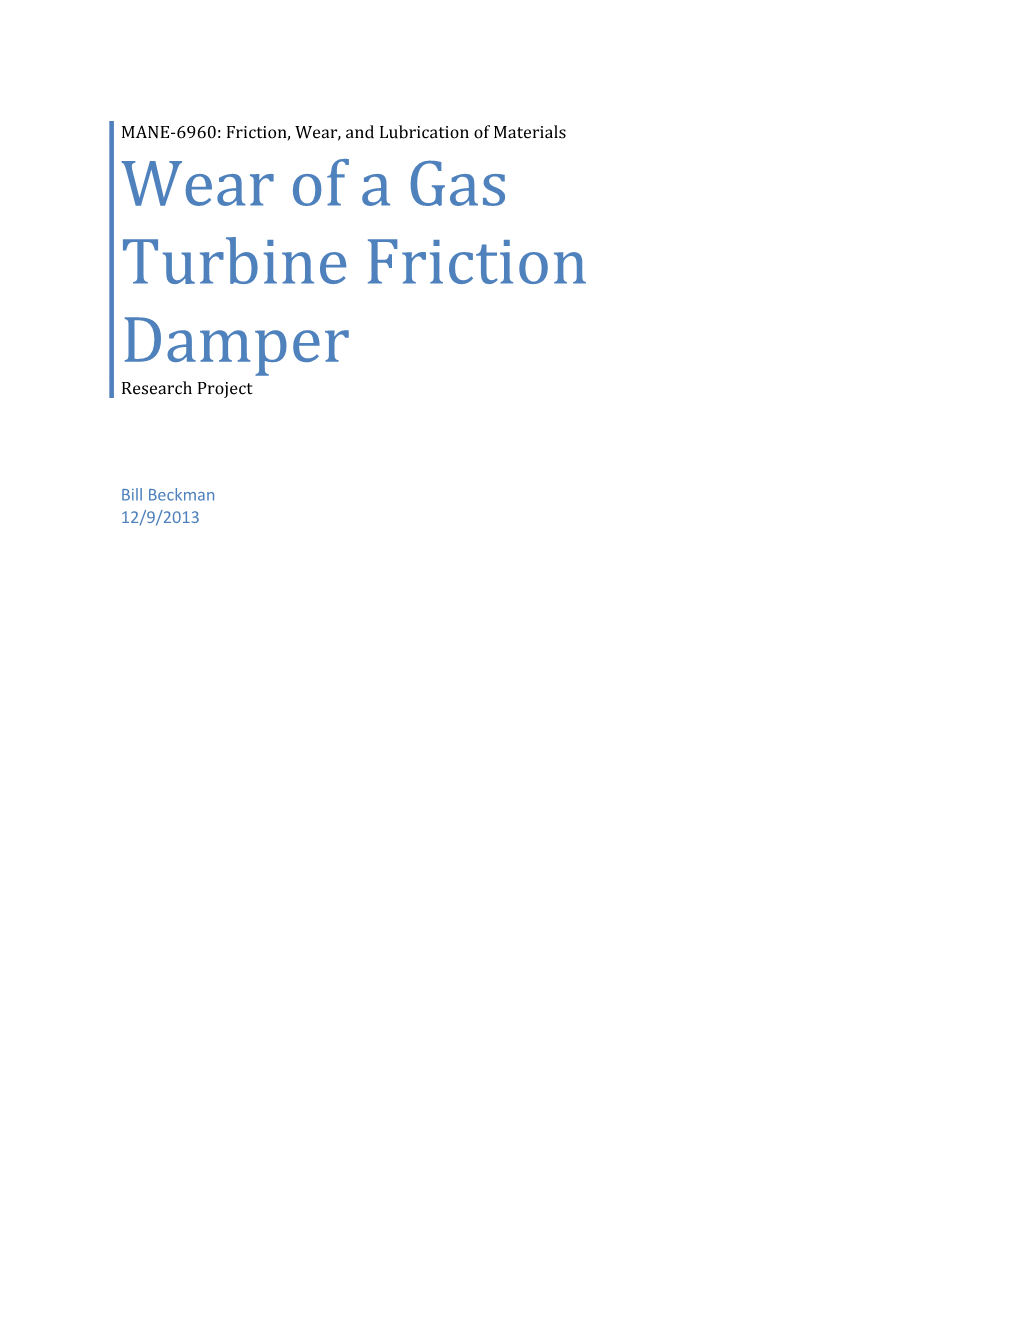 Wear of a Gas Turbine Friction Damper